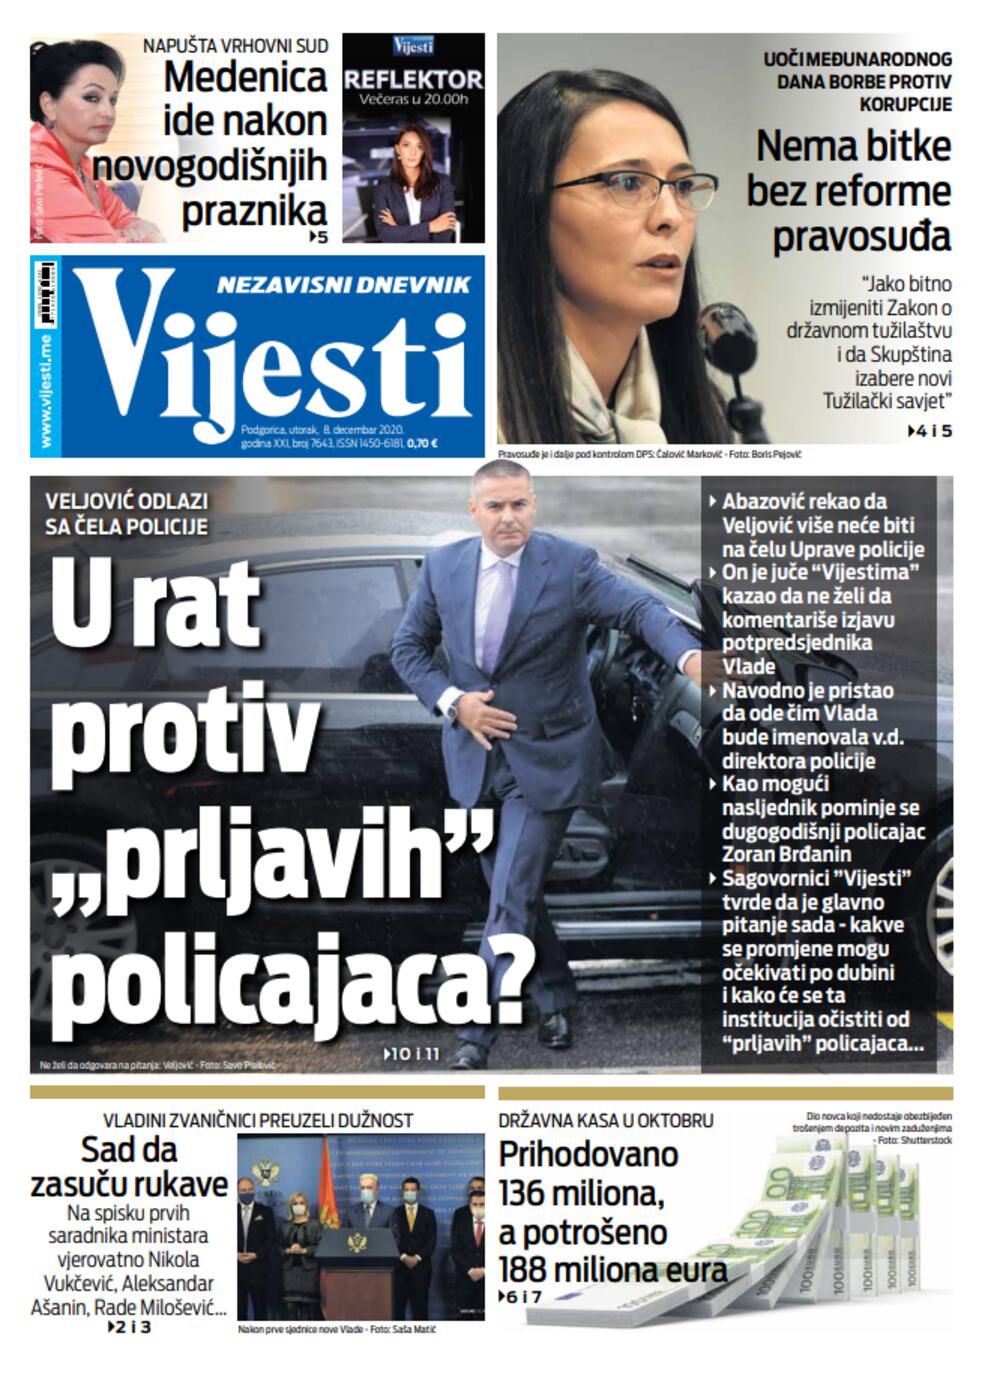 Naslovna strana "Vijesti" za utorak 8. decembar 2020. godine, Foto: Vijesti